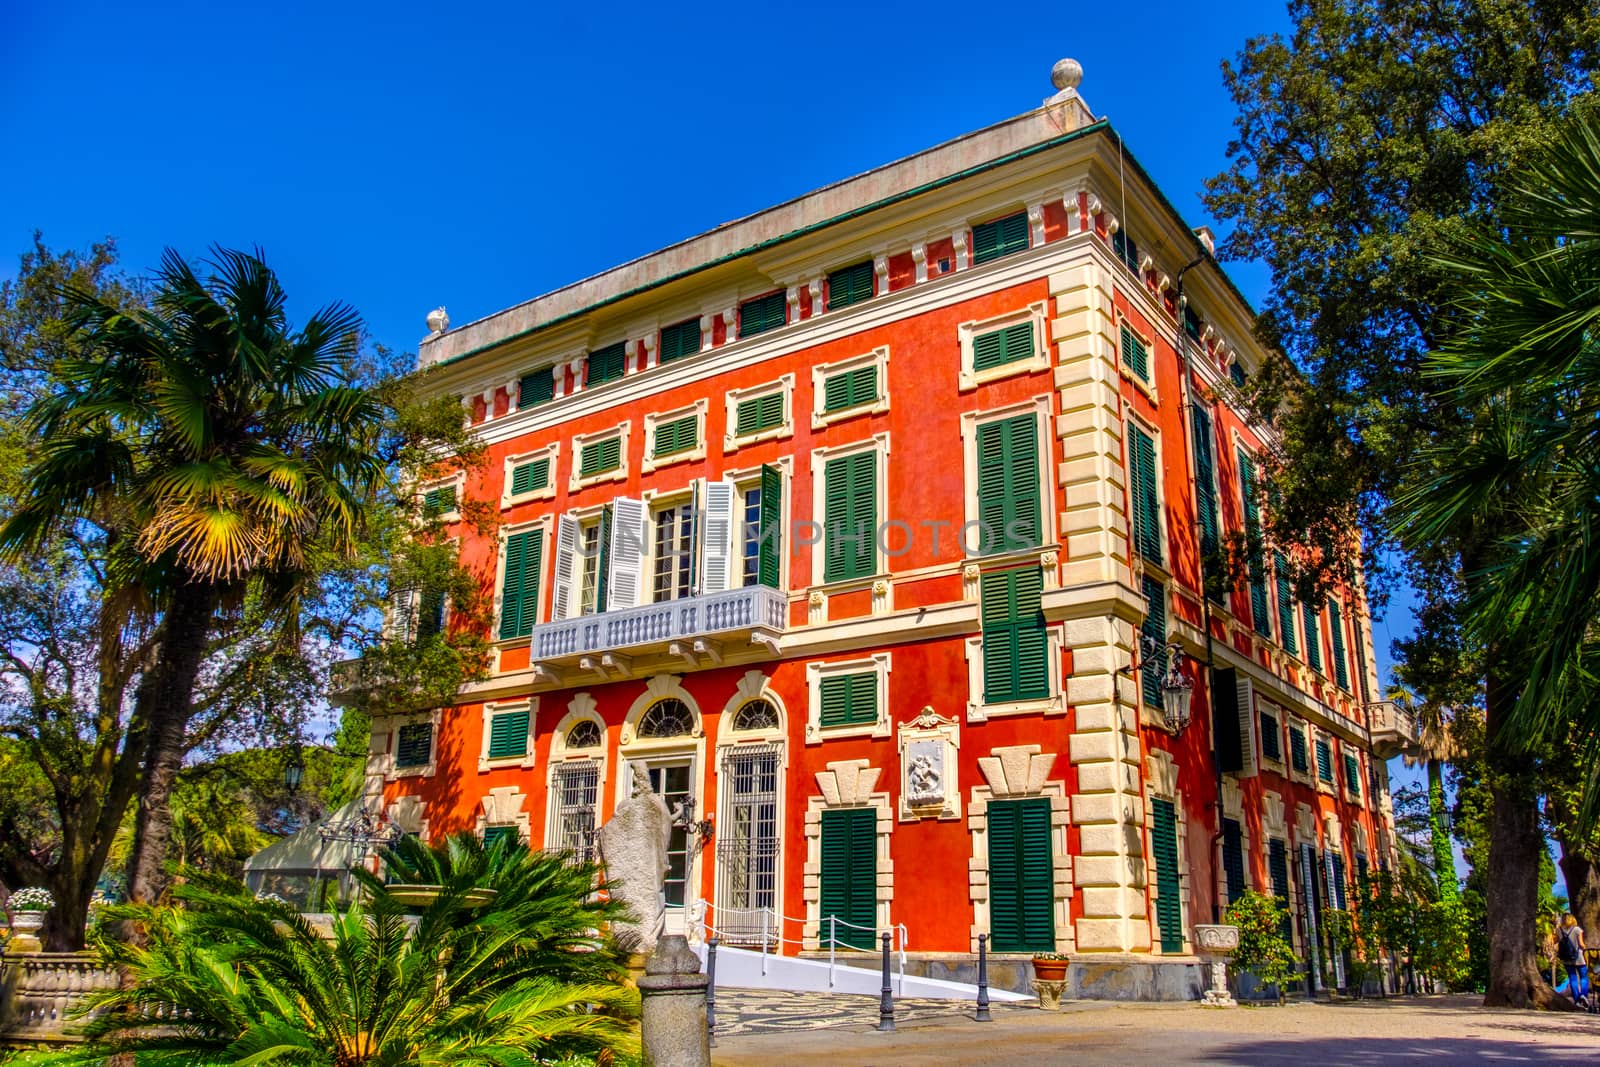 romantic villa Durazzo - Genoa - Liguria region - Italy .